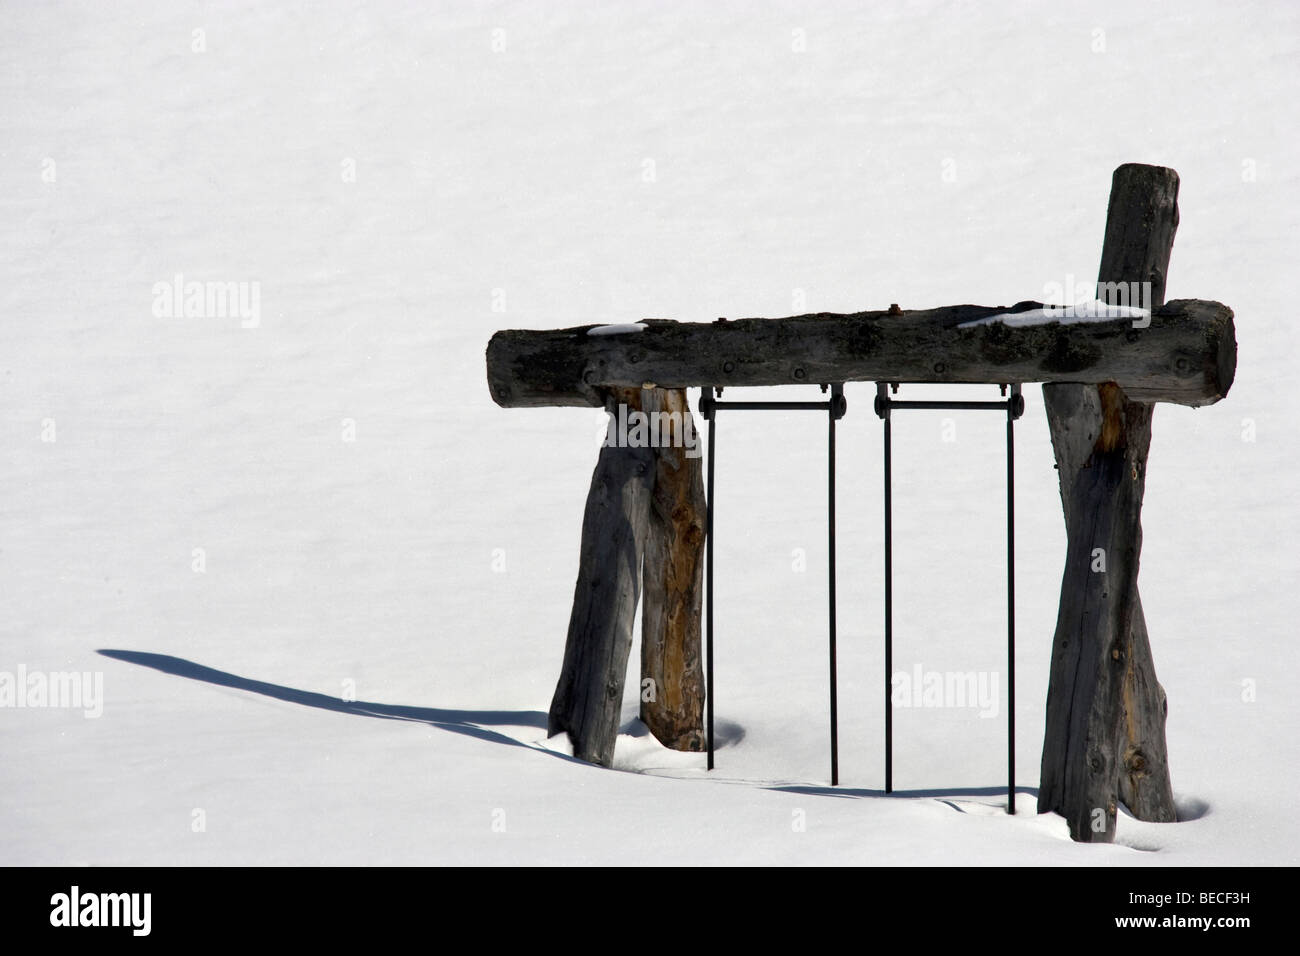 Snowed-in playground in Zillertal, Austria Stock Photo